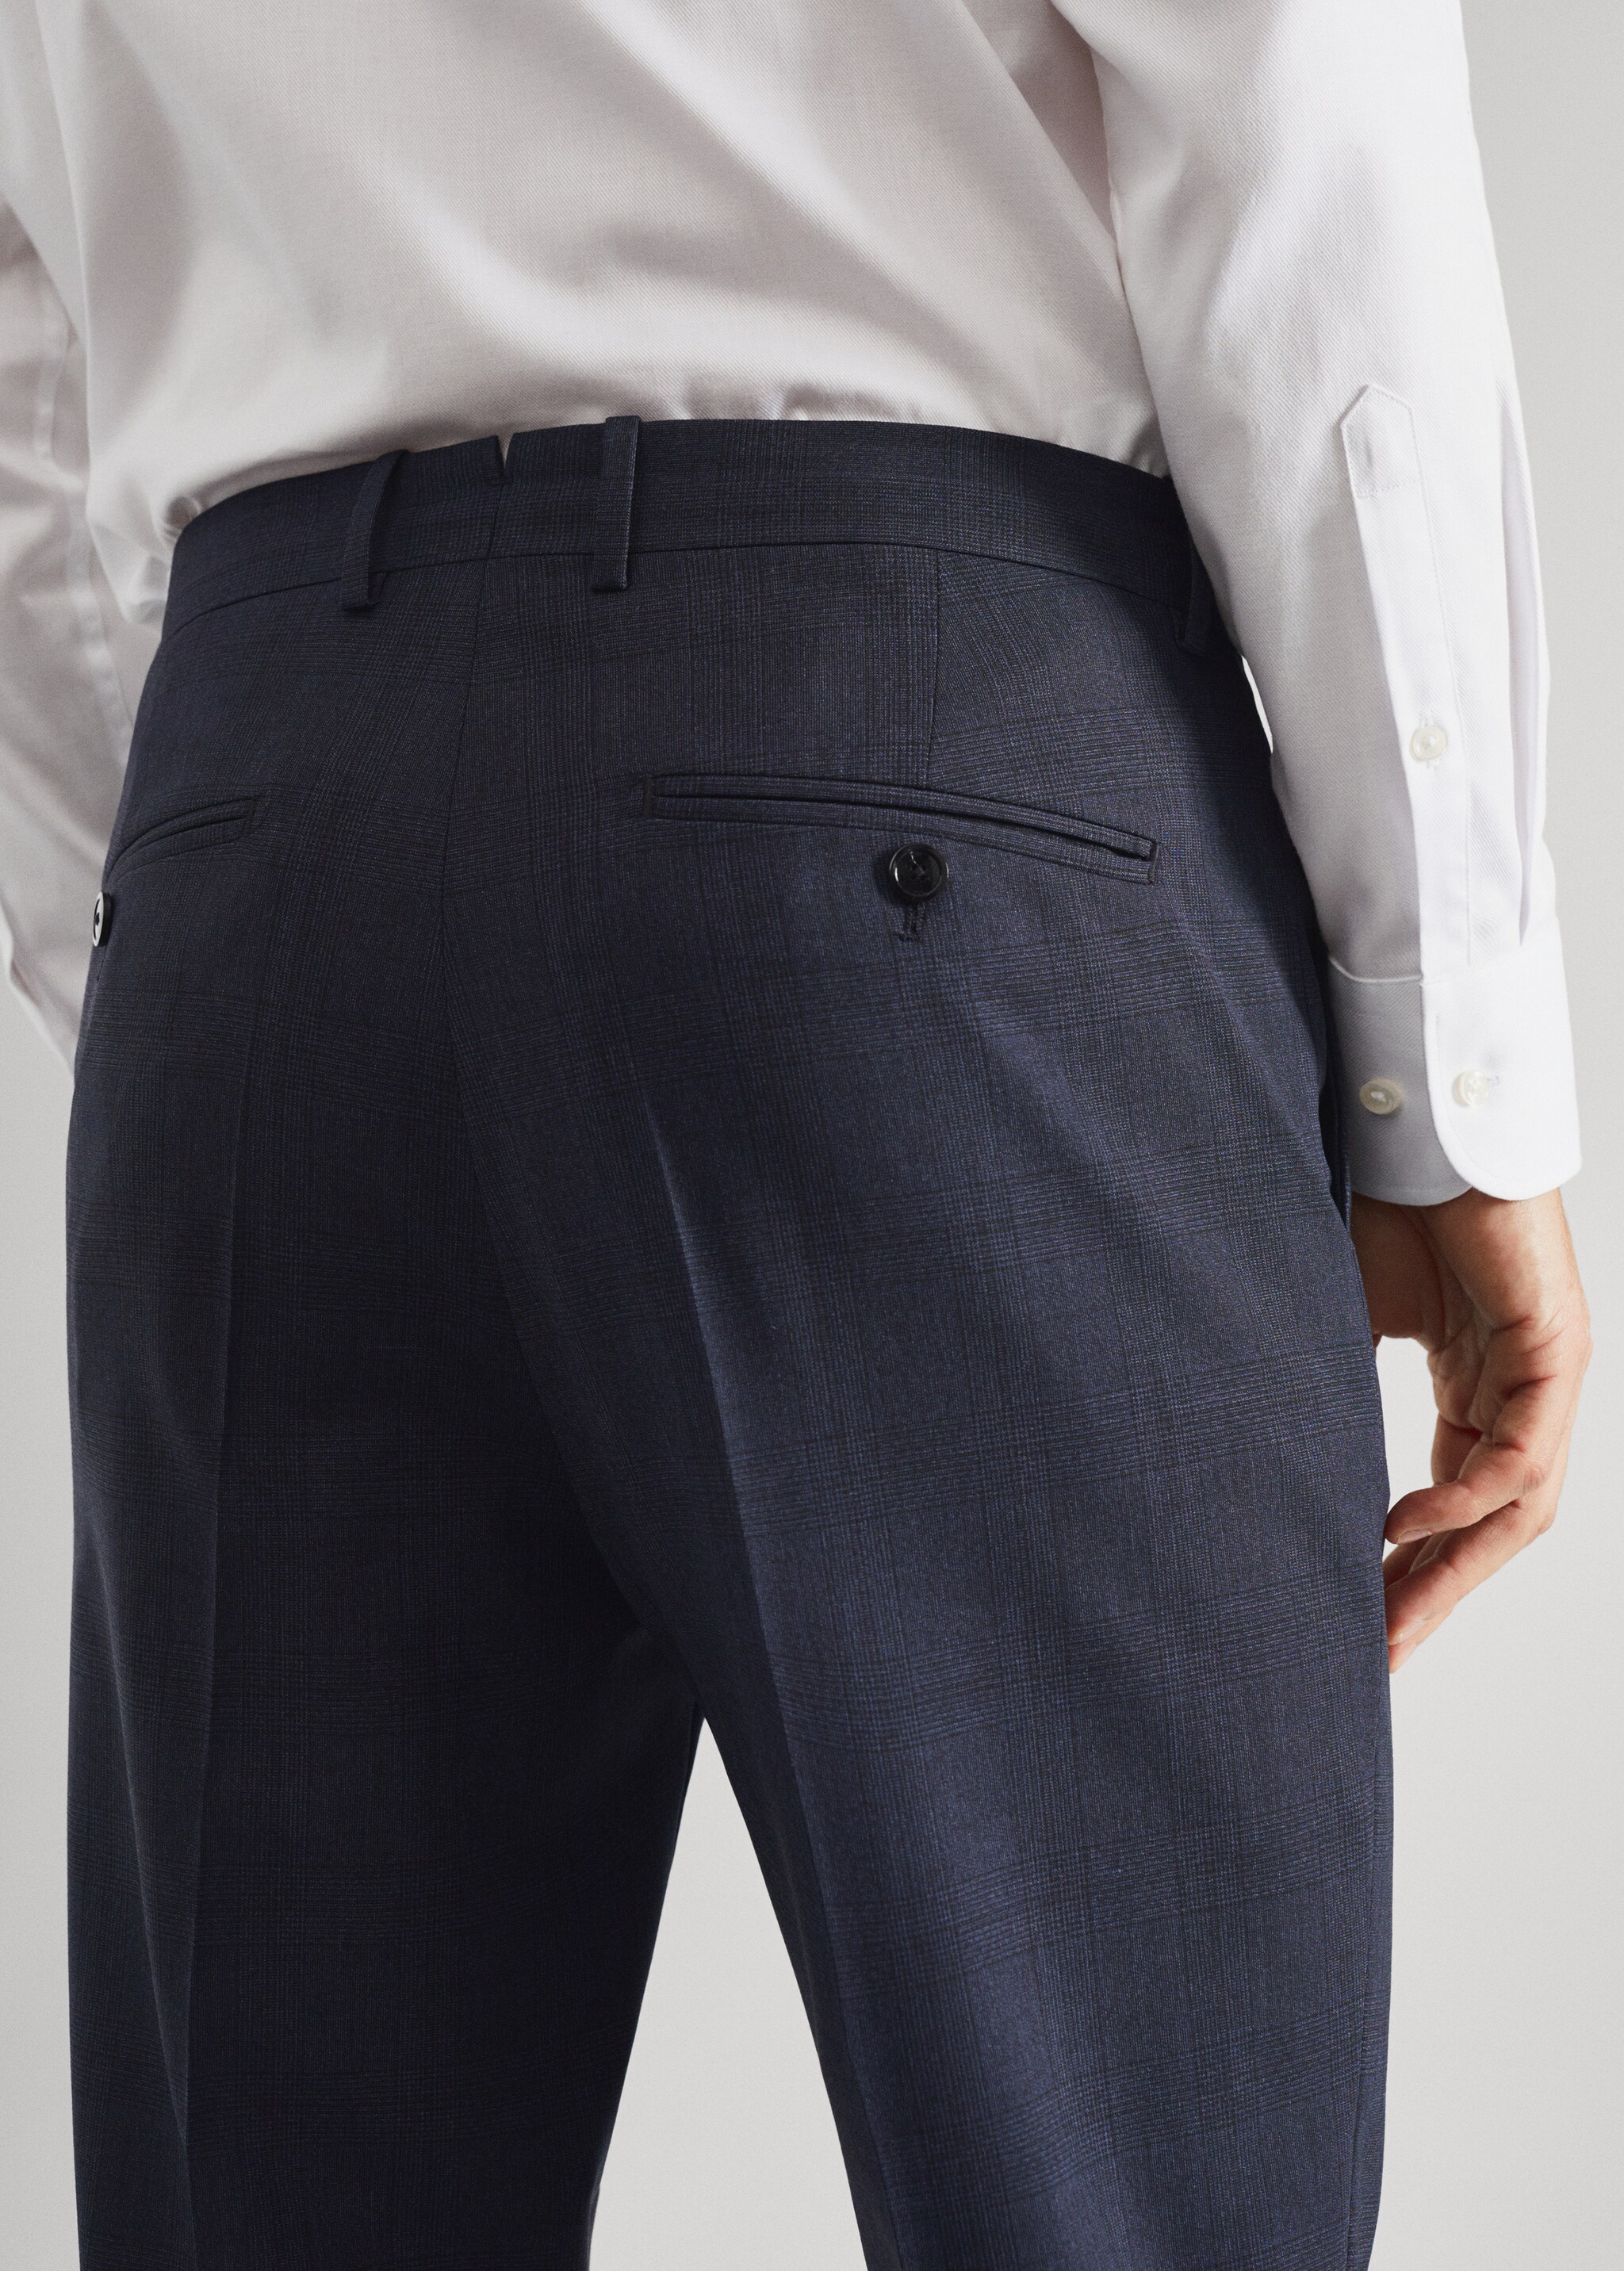 Pantalons vestir slim fit llana - Detall de l'article 6